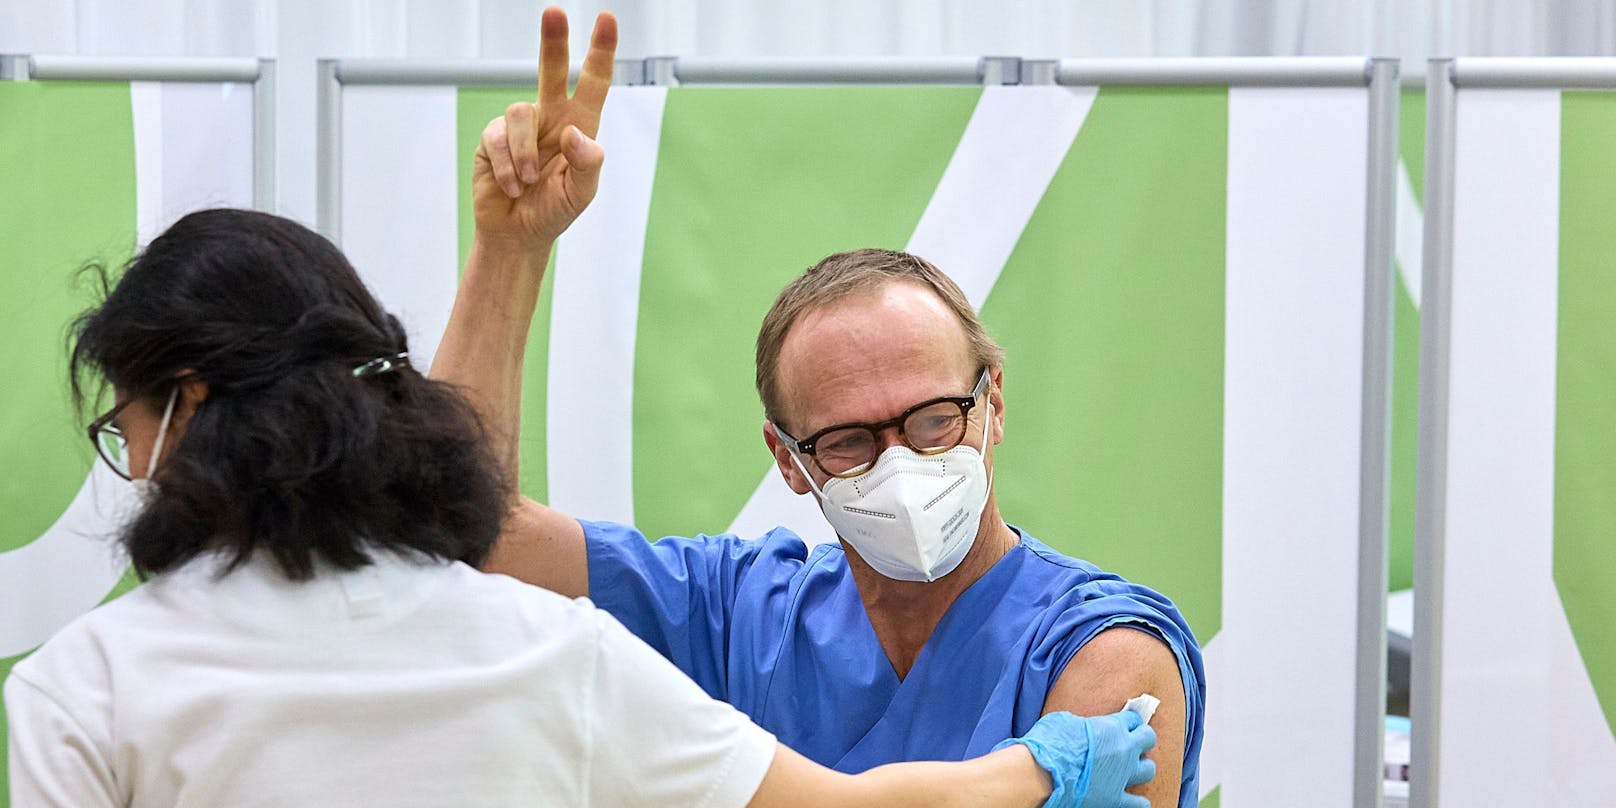 Christoph Wenisch, der Leiter der Infektionsabteilung hat als Erster seine erste Impfung erhalten und streckt die Finger aus zum Victory-Zeichen nach erfolgter Impfung